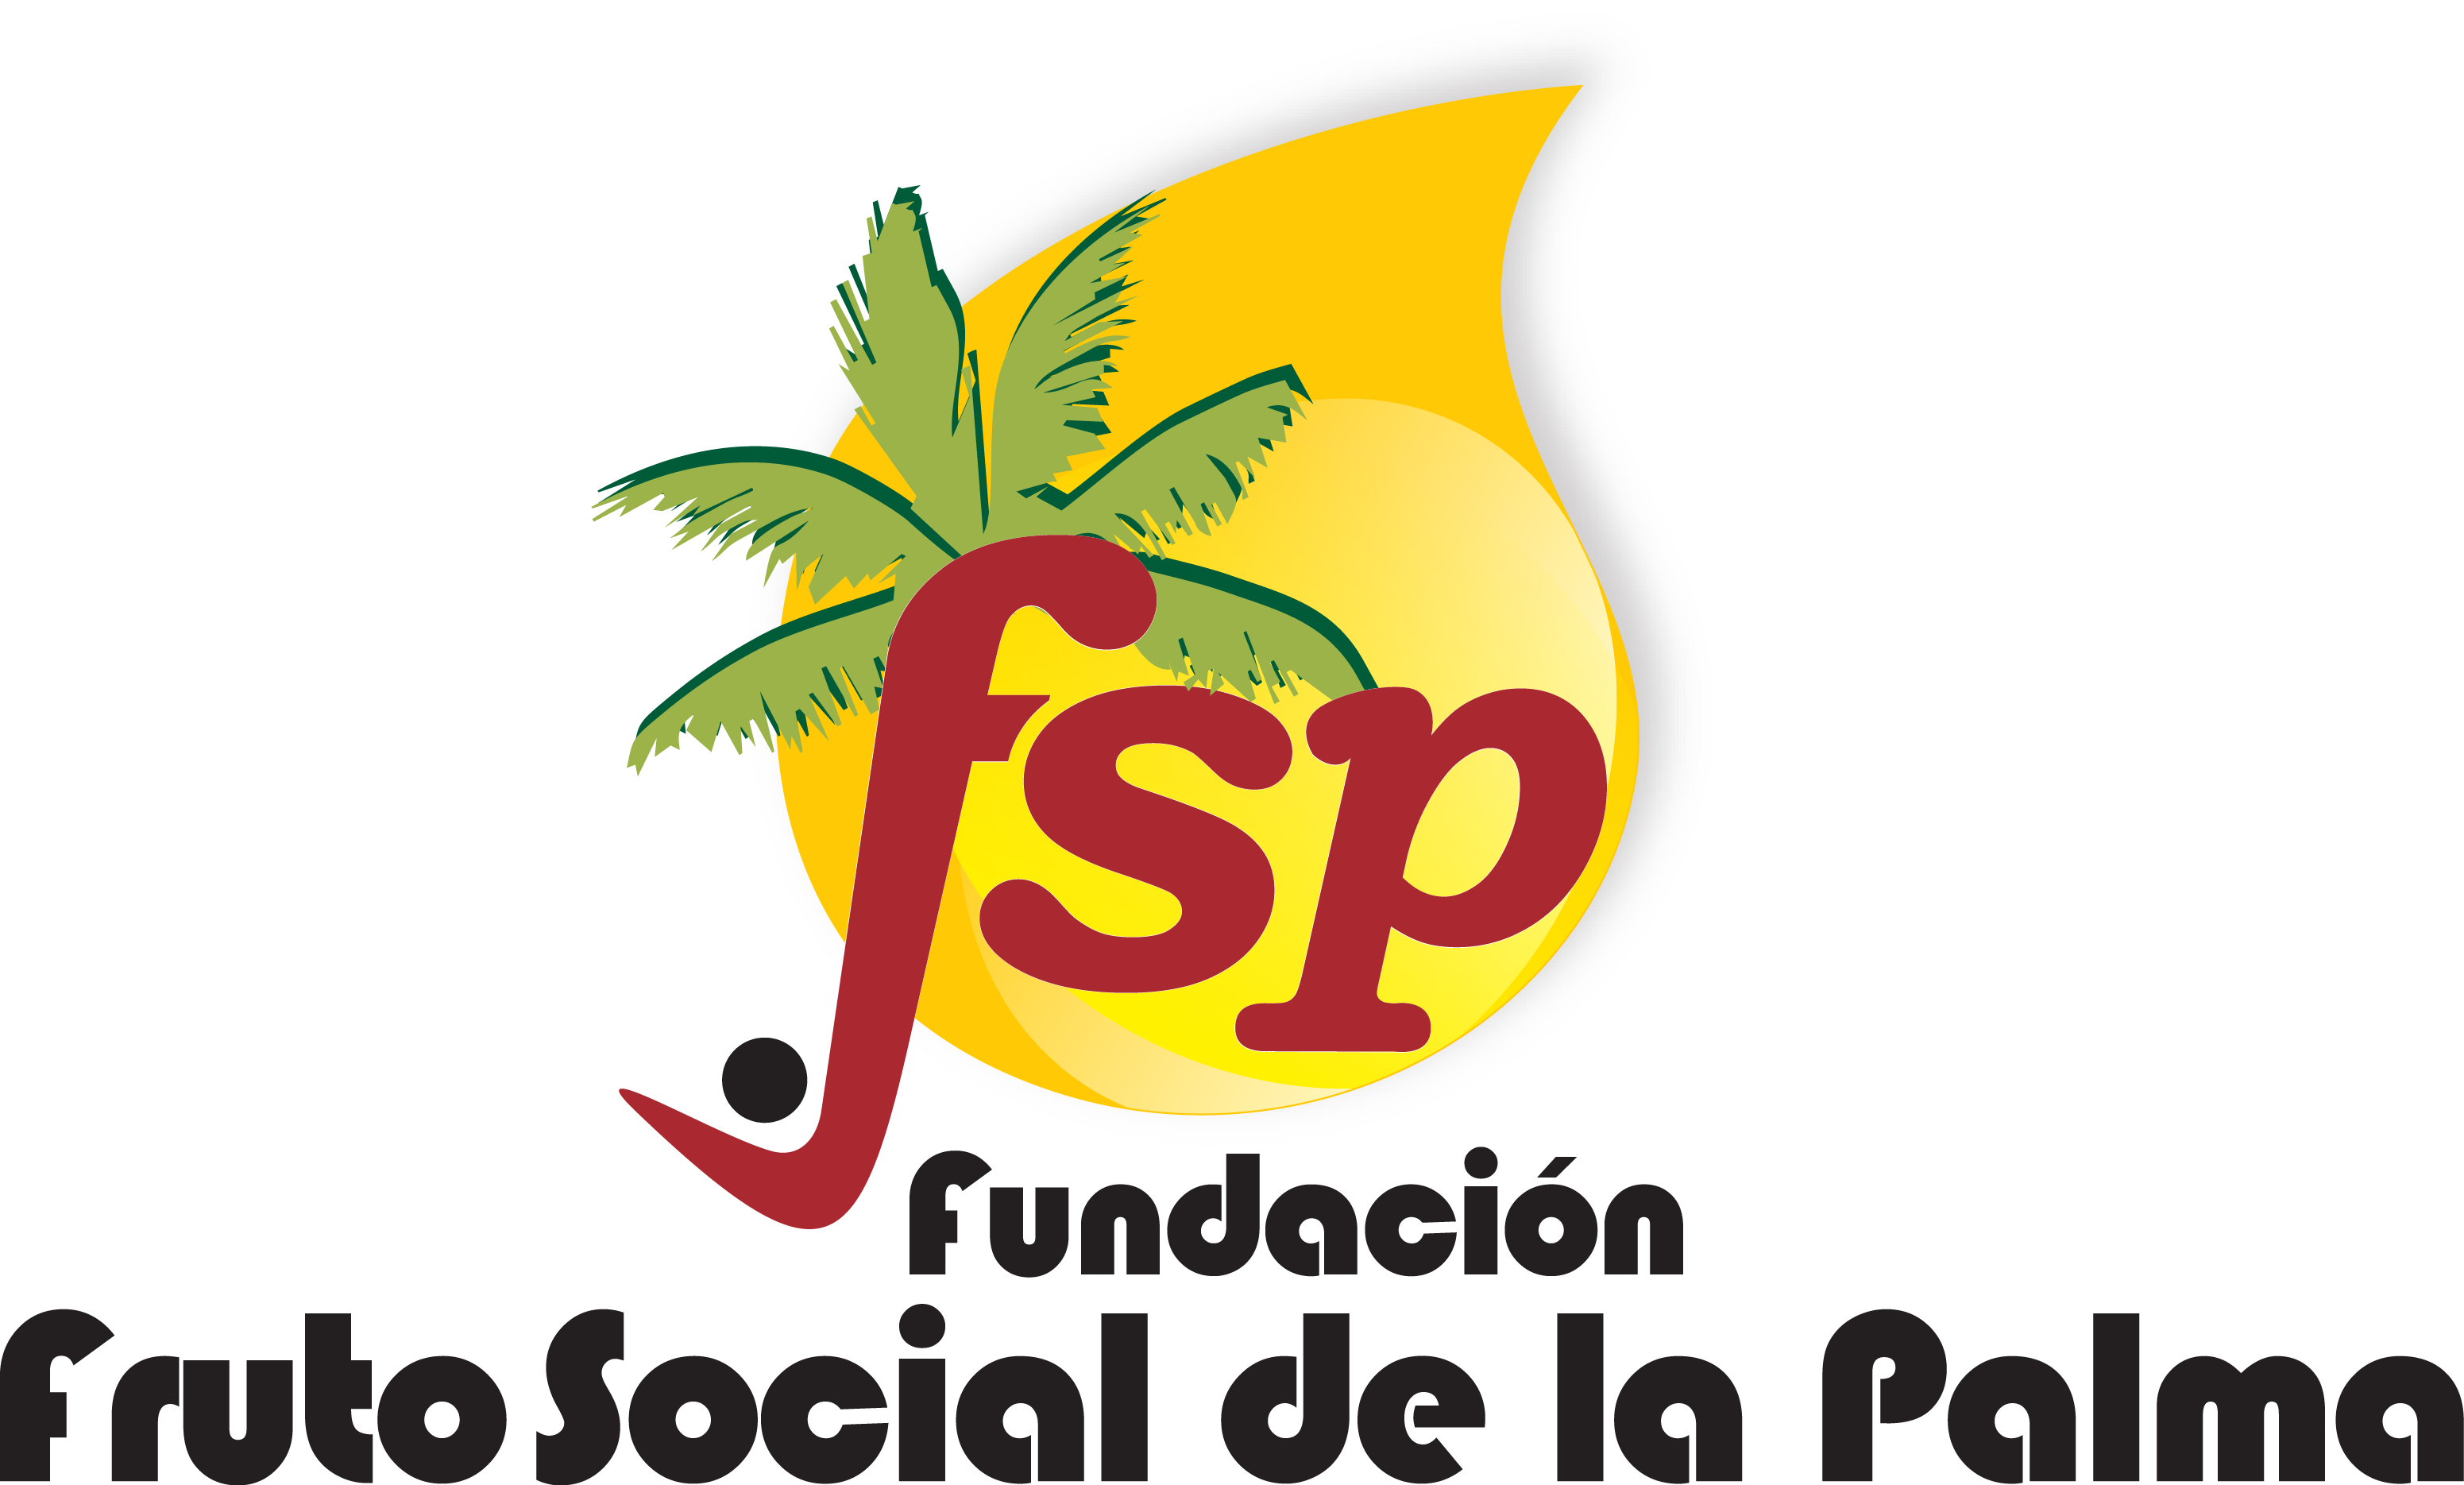 Fundación Fruto Social de la Palma